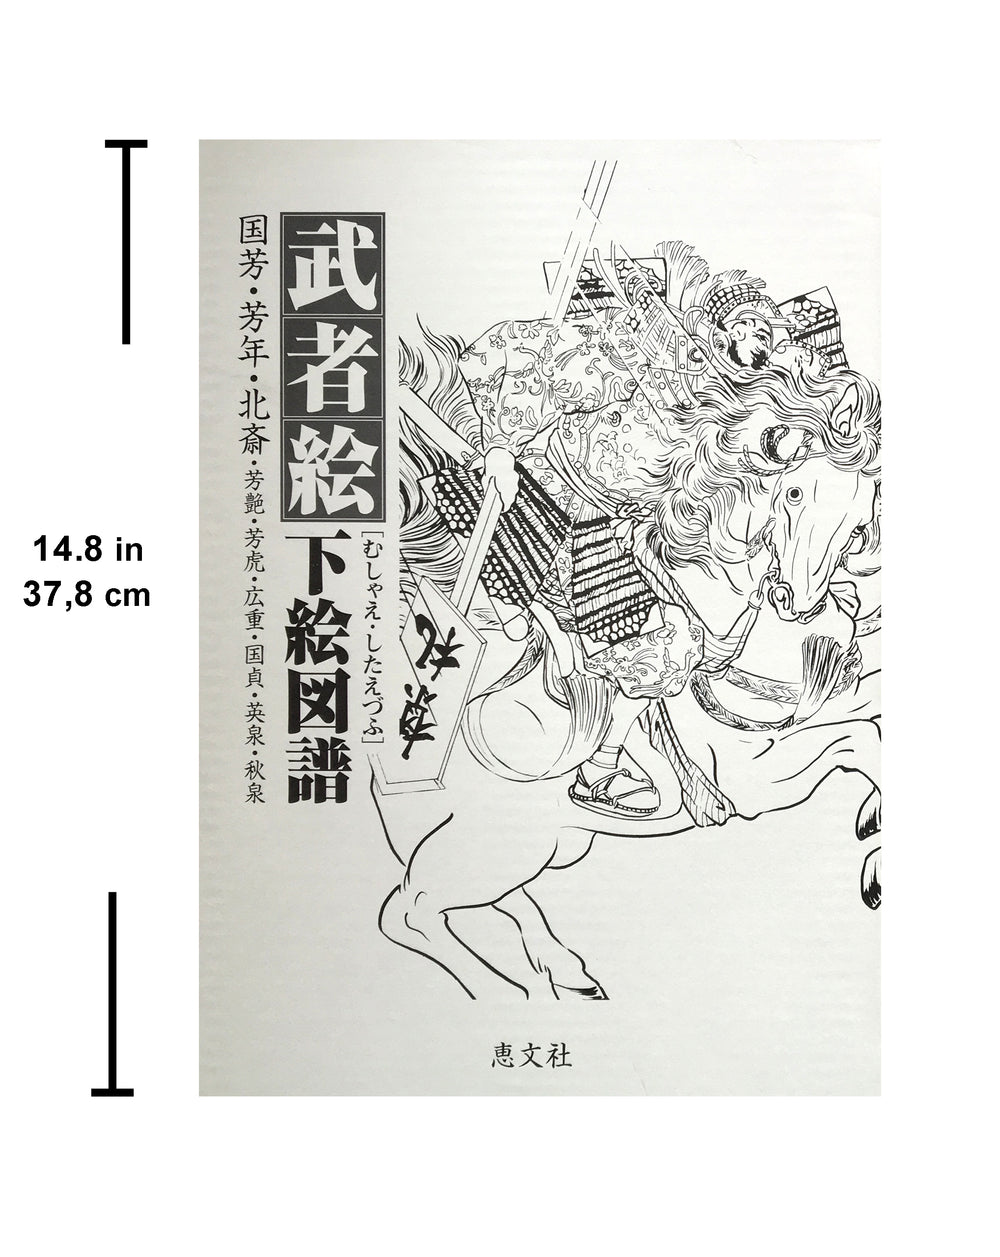 Japan Warrior Arts in Outline - Keibunsha Japan Tattoo Institute